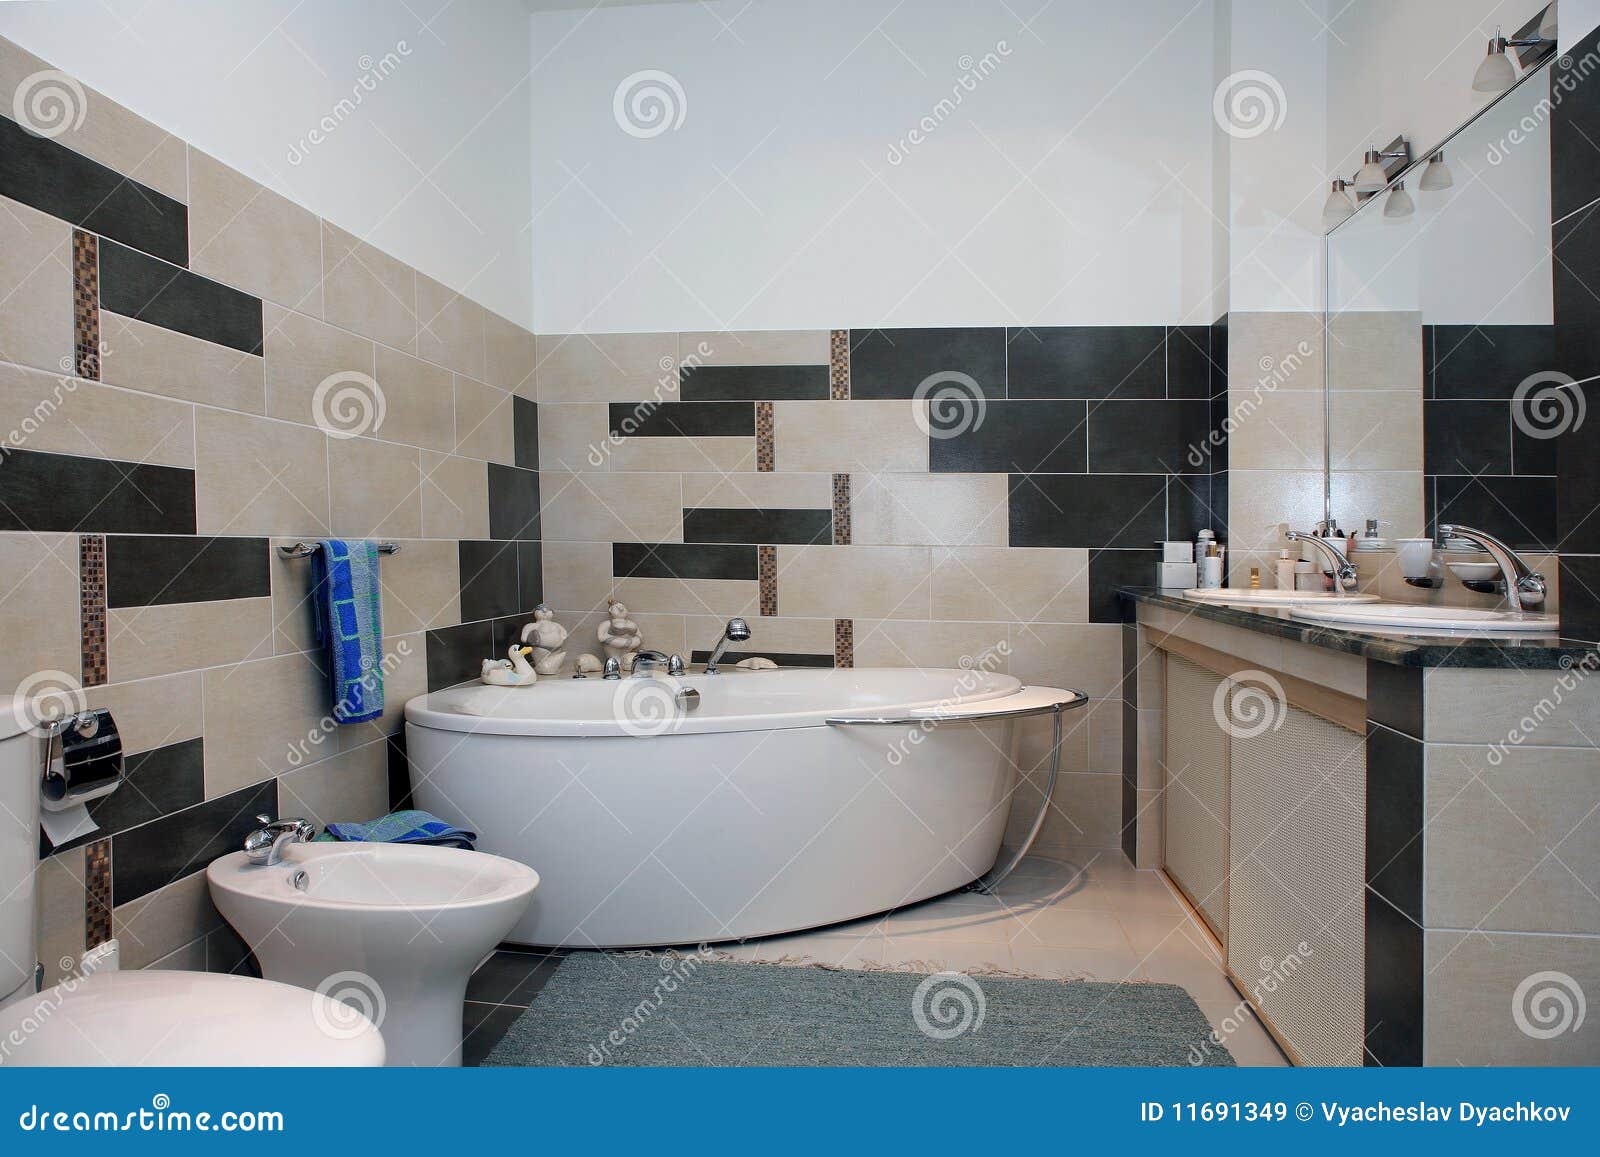 Cuarto de baño interior imagen de archivo. Imagen de baño - 11691349